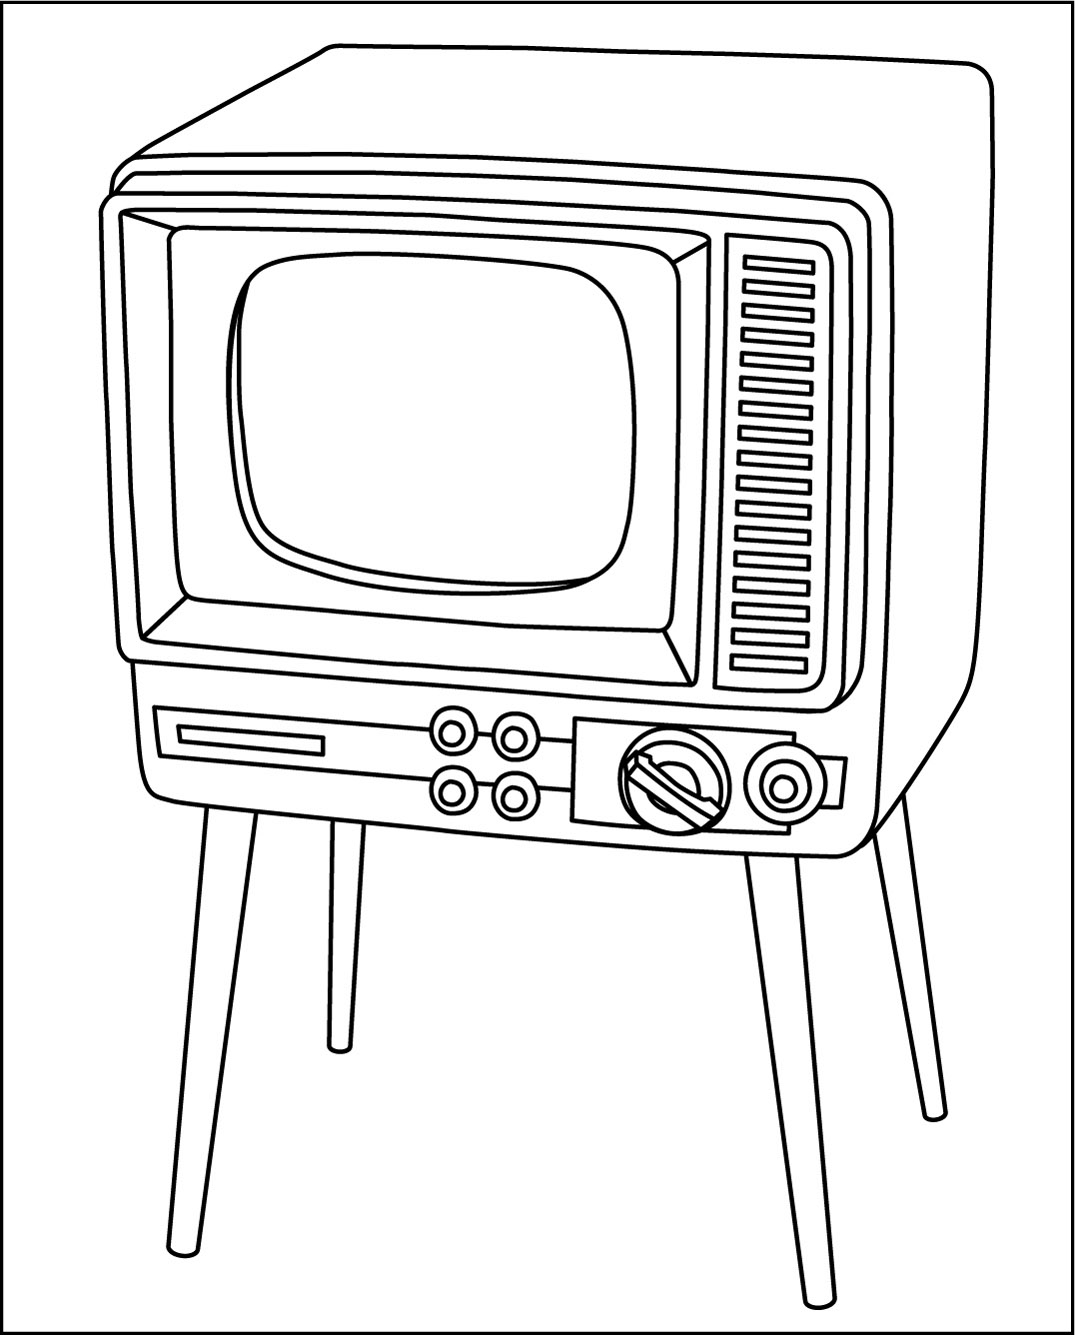 高齢者レク素材 白黒テレビ モノクロ イラスト 介護レク広場 レク素材やレクネタ 企画書 の無料ダウンロード